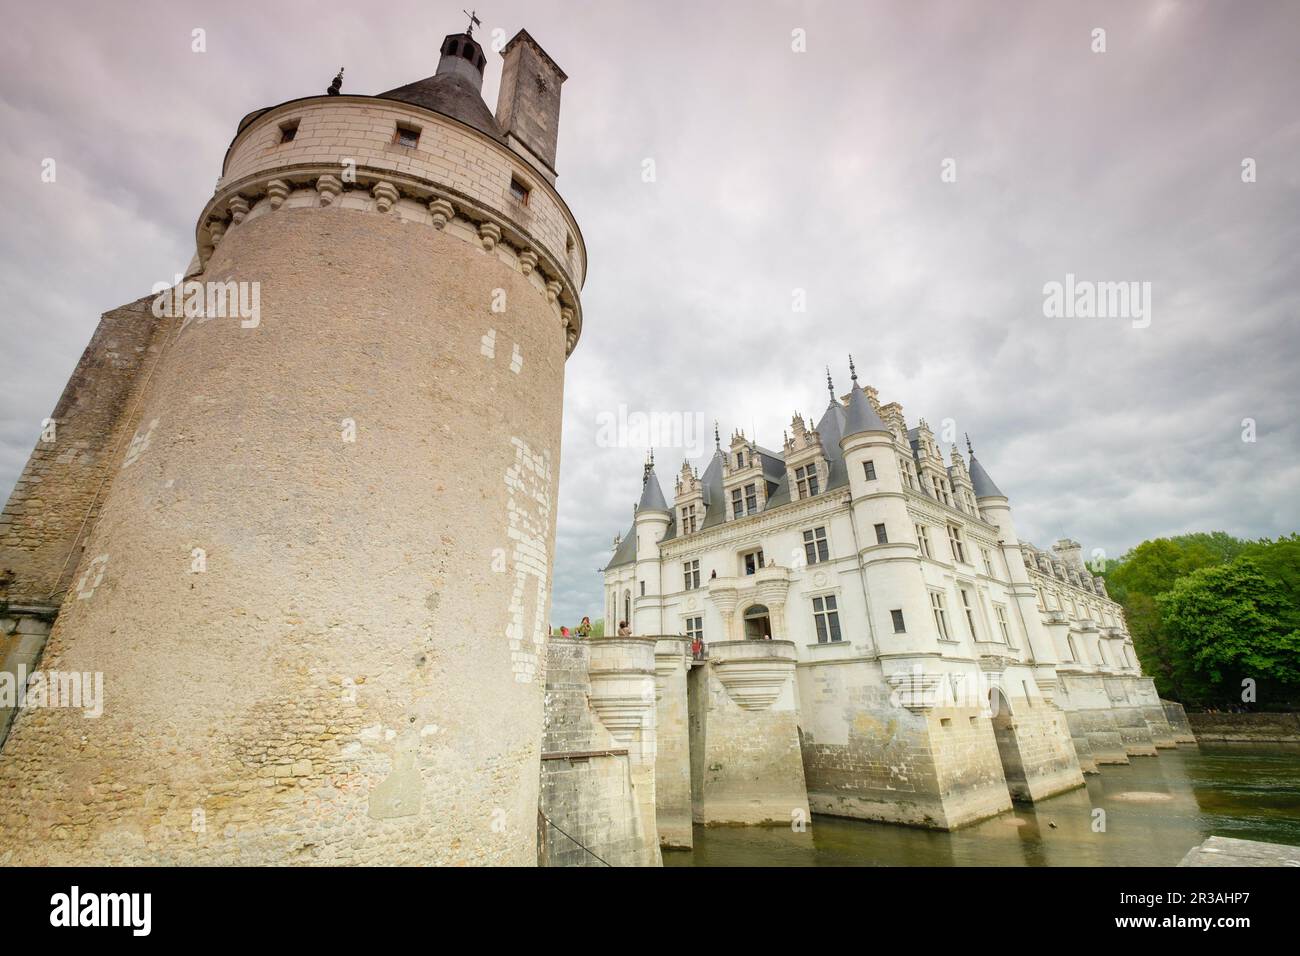 Tour des Marques, castillo de Chenonceau, siglo XVI, Chenonceaux, departamento de Indre y Loira,France,Western Europe. Stock Photo